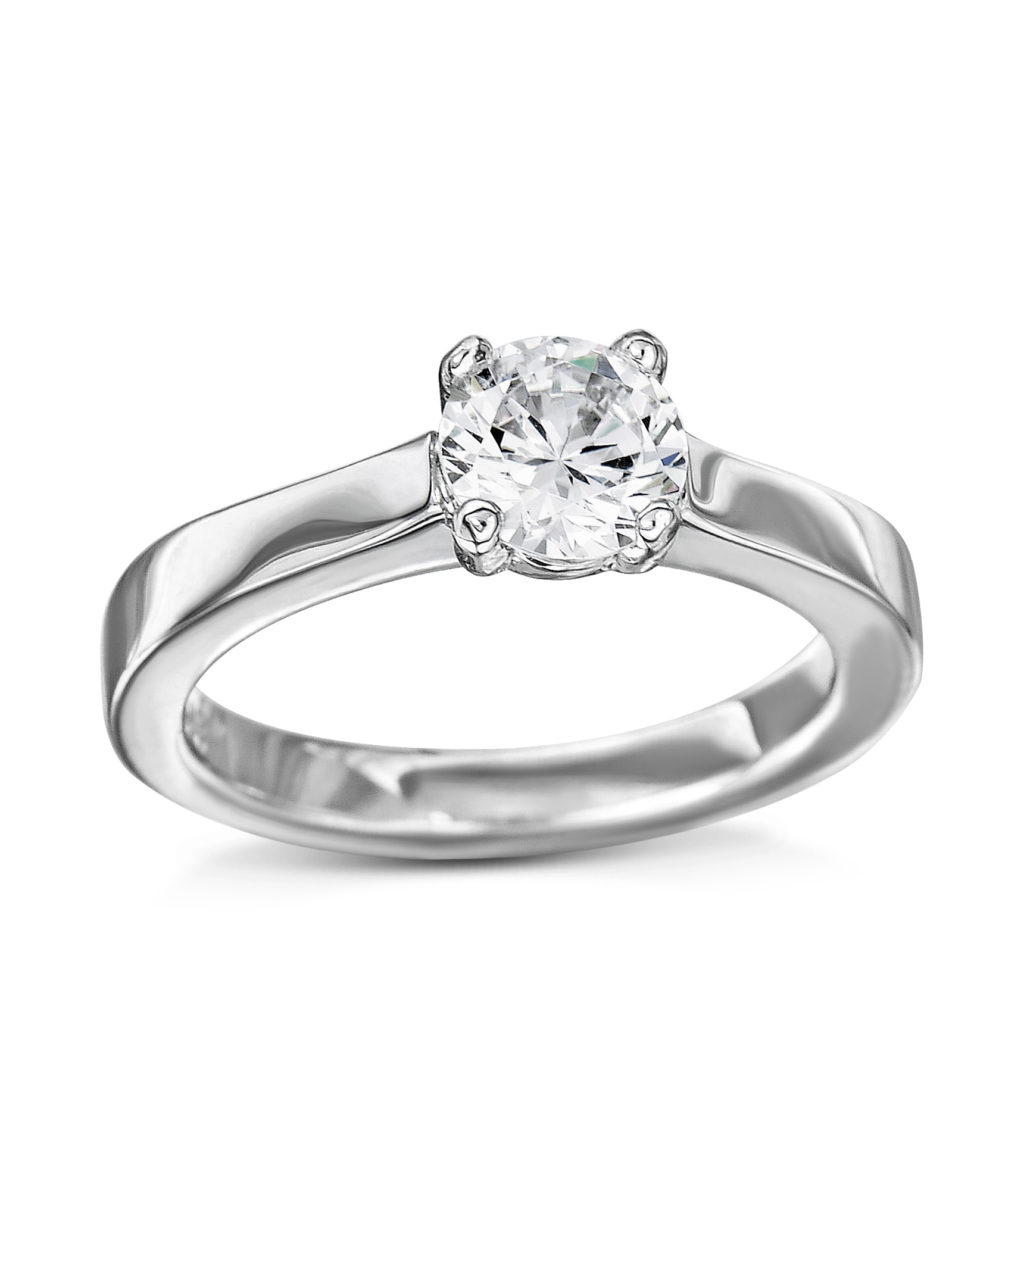 Platinum and Diamond Engagement Ring - Turgeon Raine